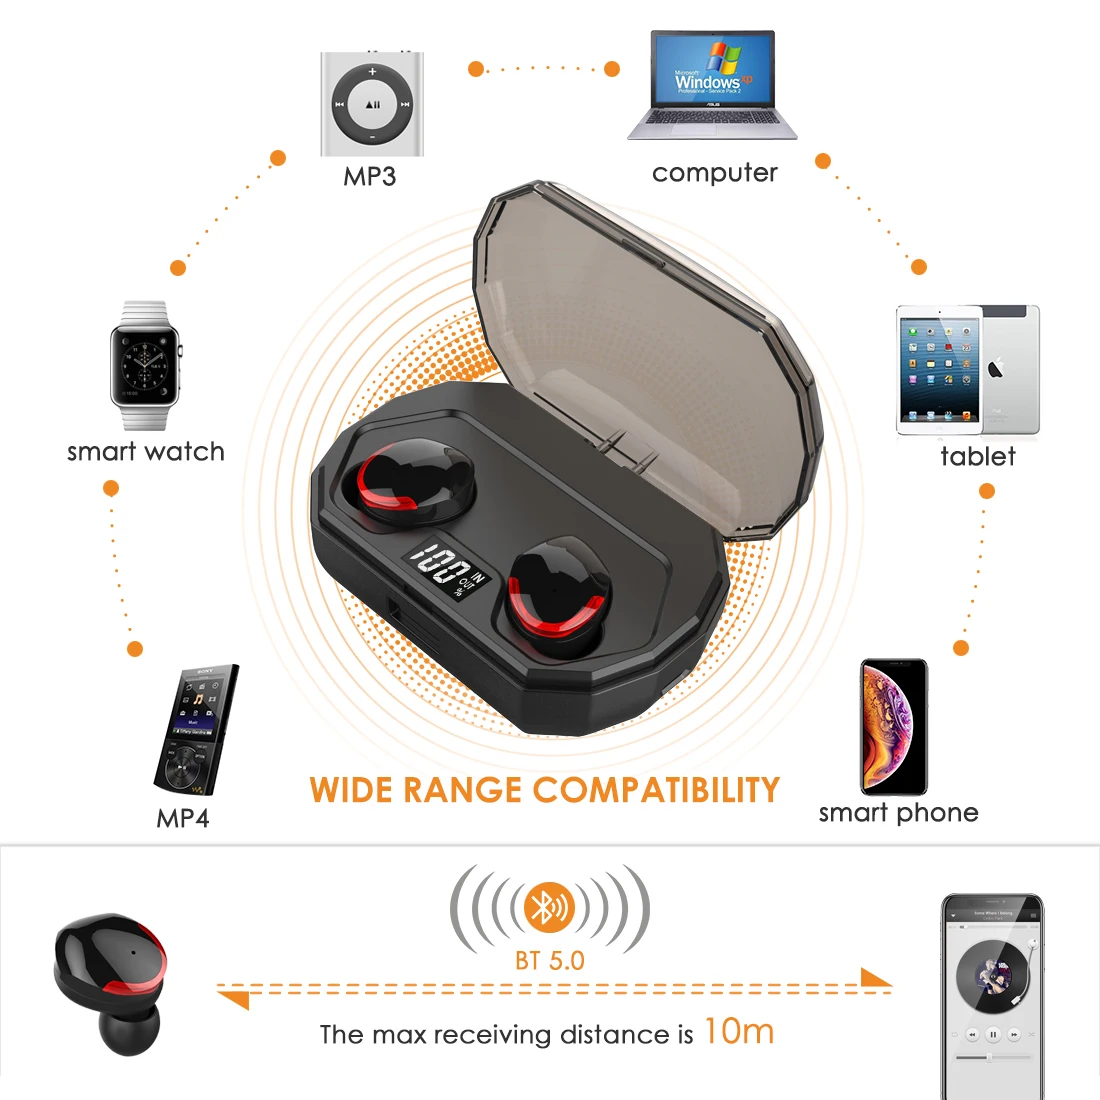 Leelbox наушники-вкладыши TWS с R10 двойной V5.0 Беспроводной наушники Bluetooth наушники 3D стерео звук наушники с двойной микрофон и зарядным устройством